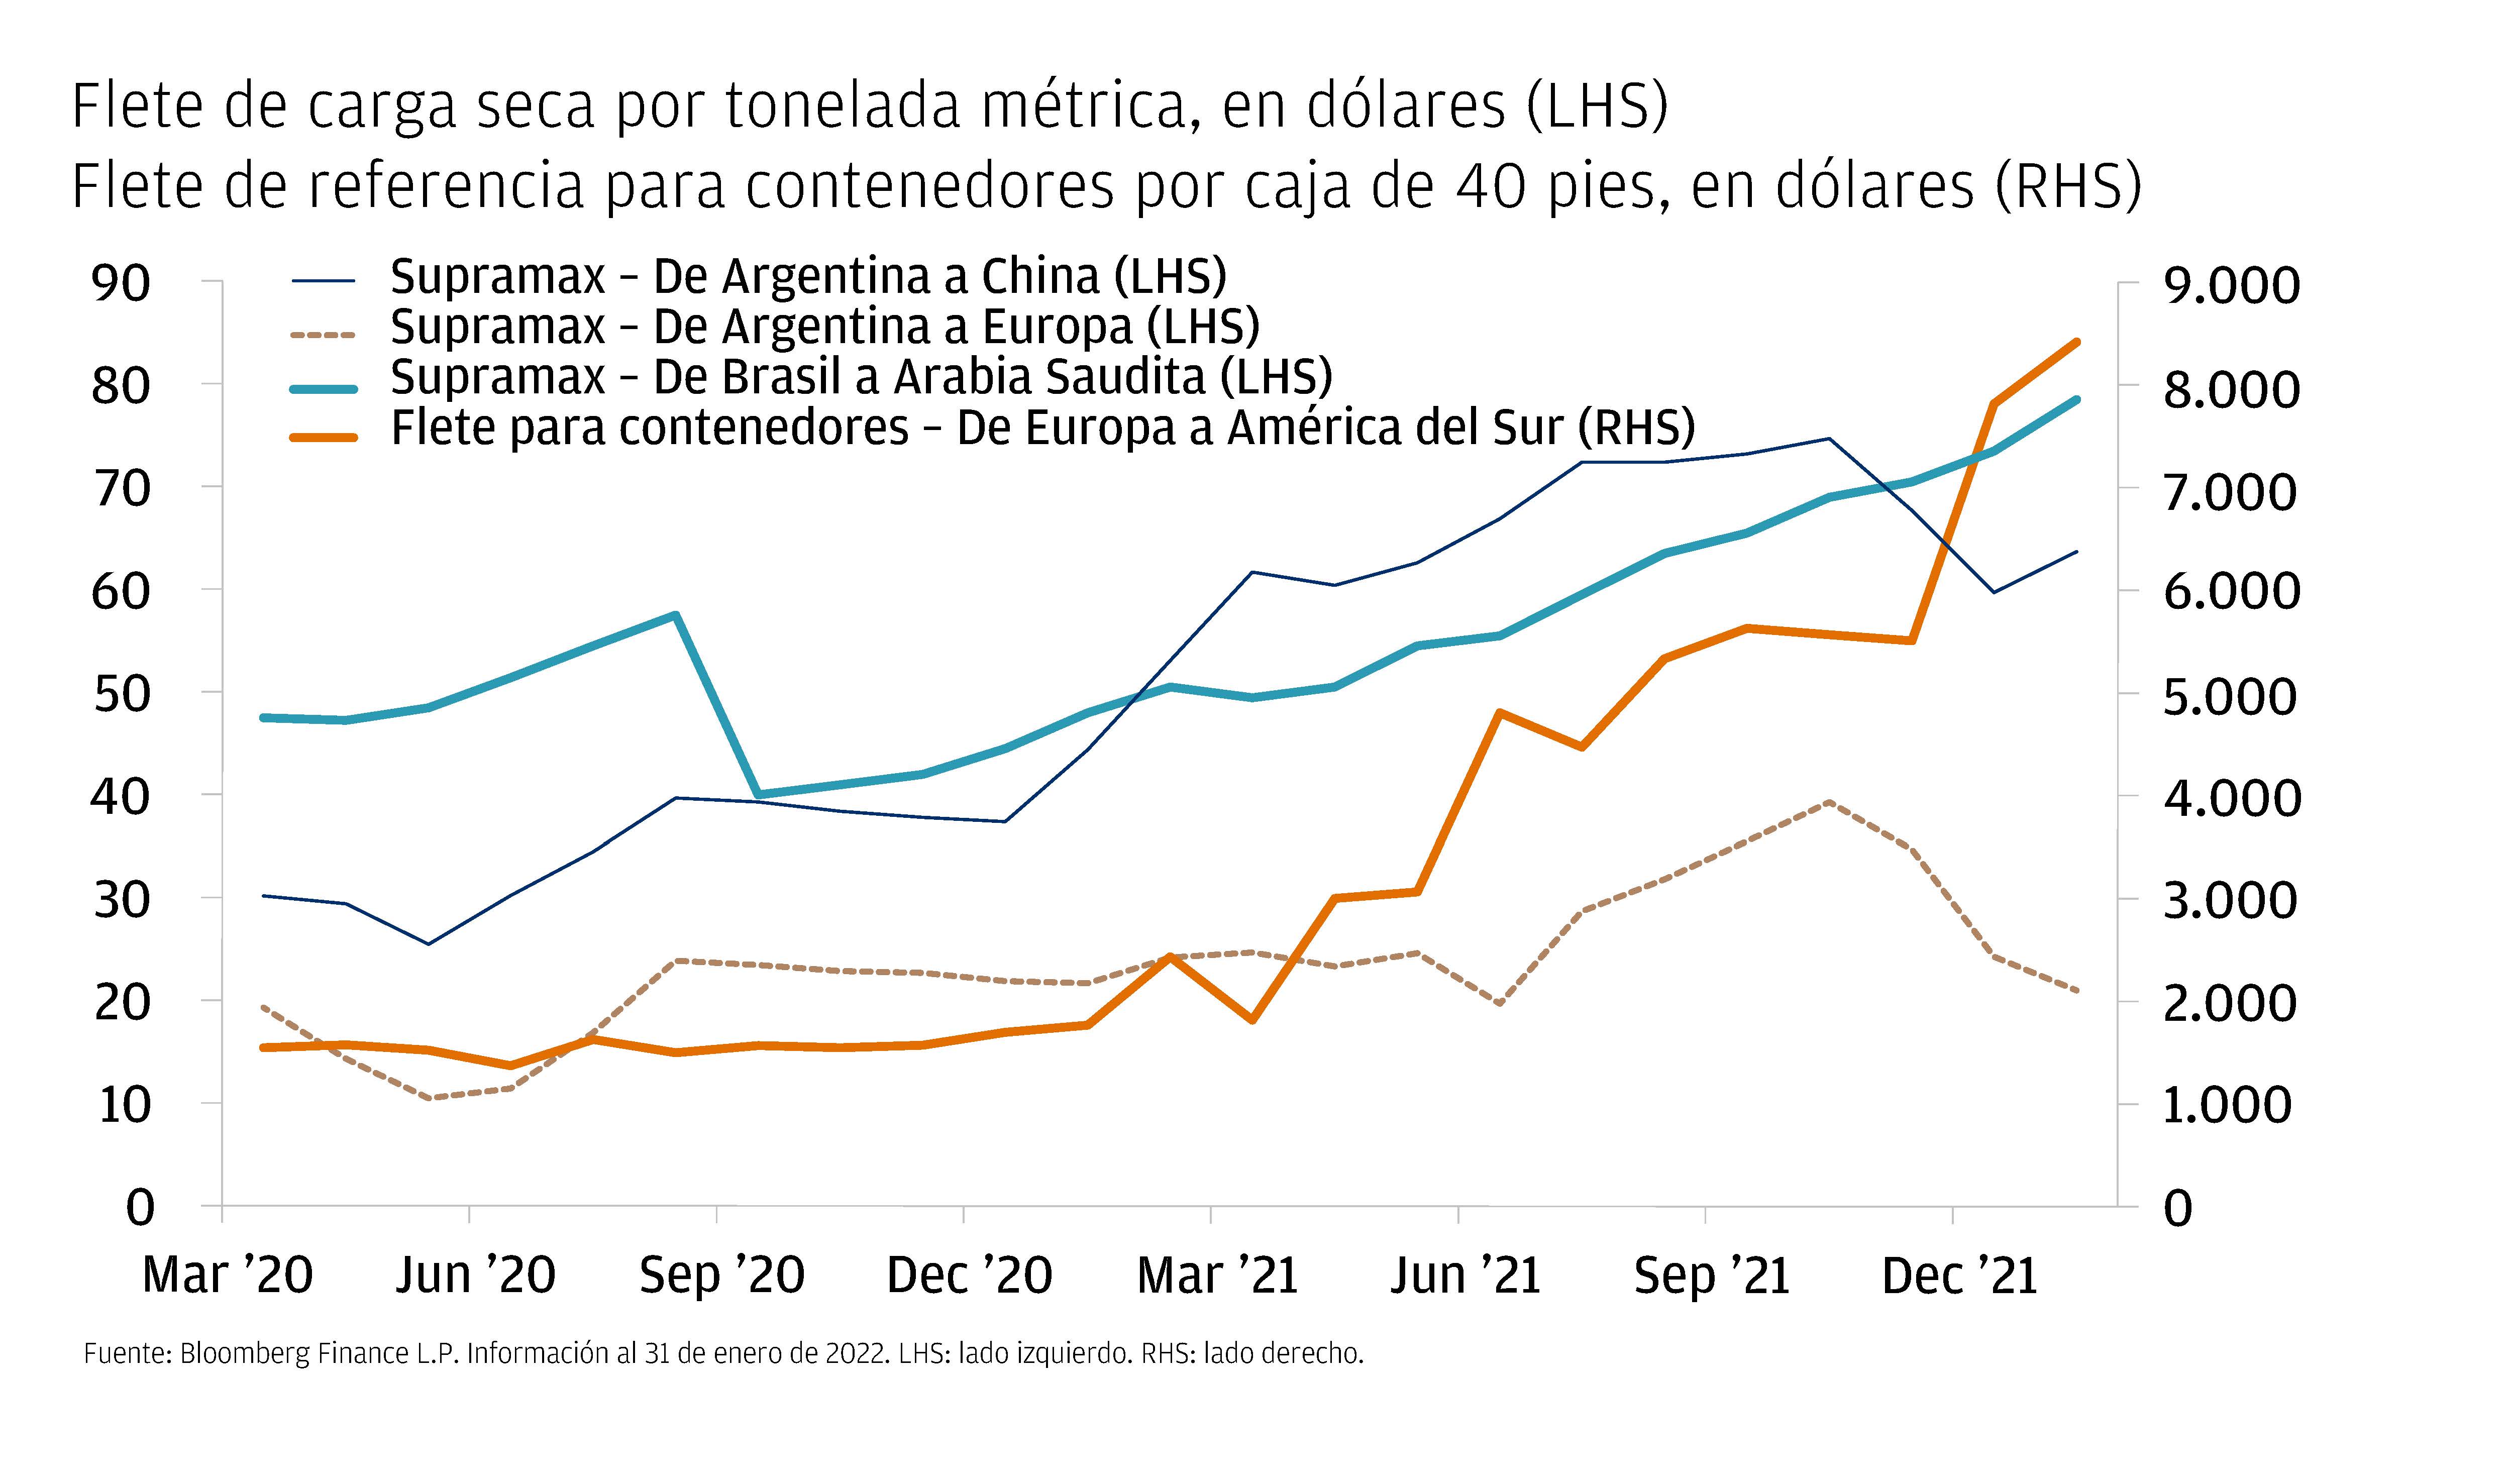 Este gráfico muestra lso datos de costos de envío en América Latina para cuatro rutas: Argentina a China, Argentina a Europa, Brasil a Arabia Saudita y de Europa a Sudamérica, con valores entre marzo del 2020 y diciembre de 2021. 